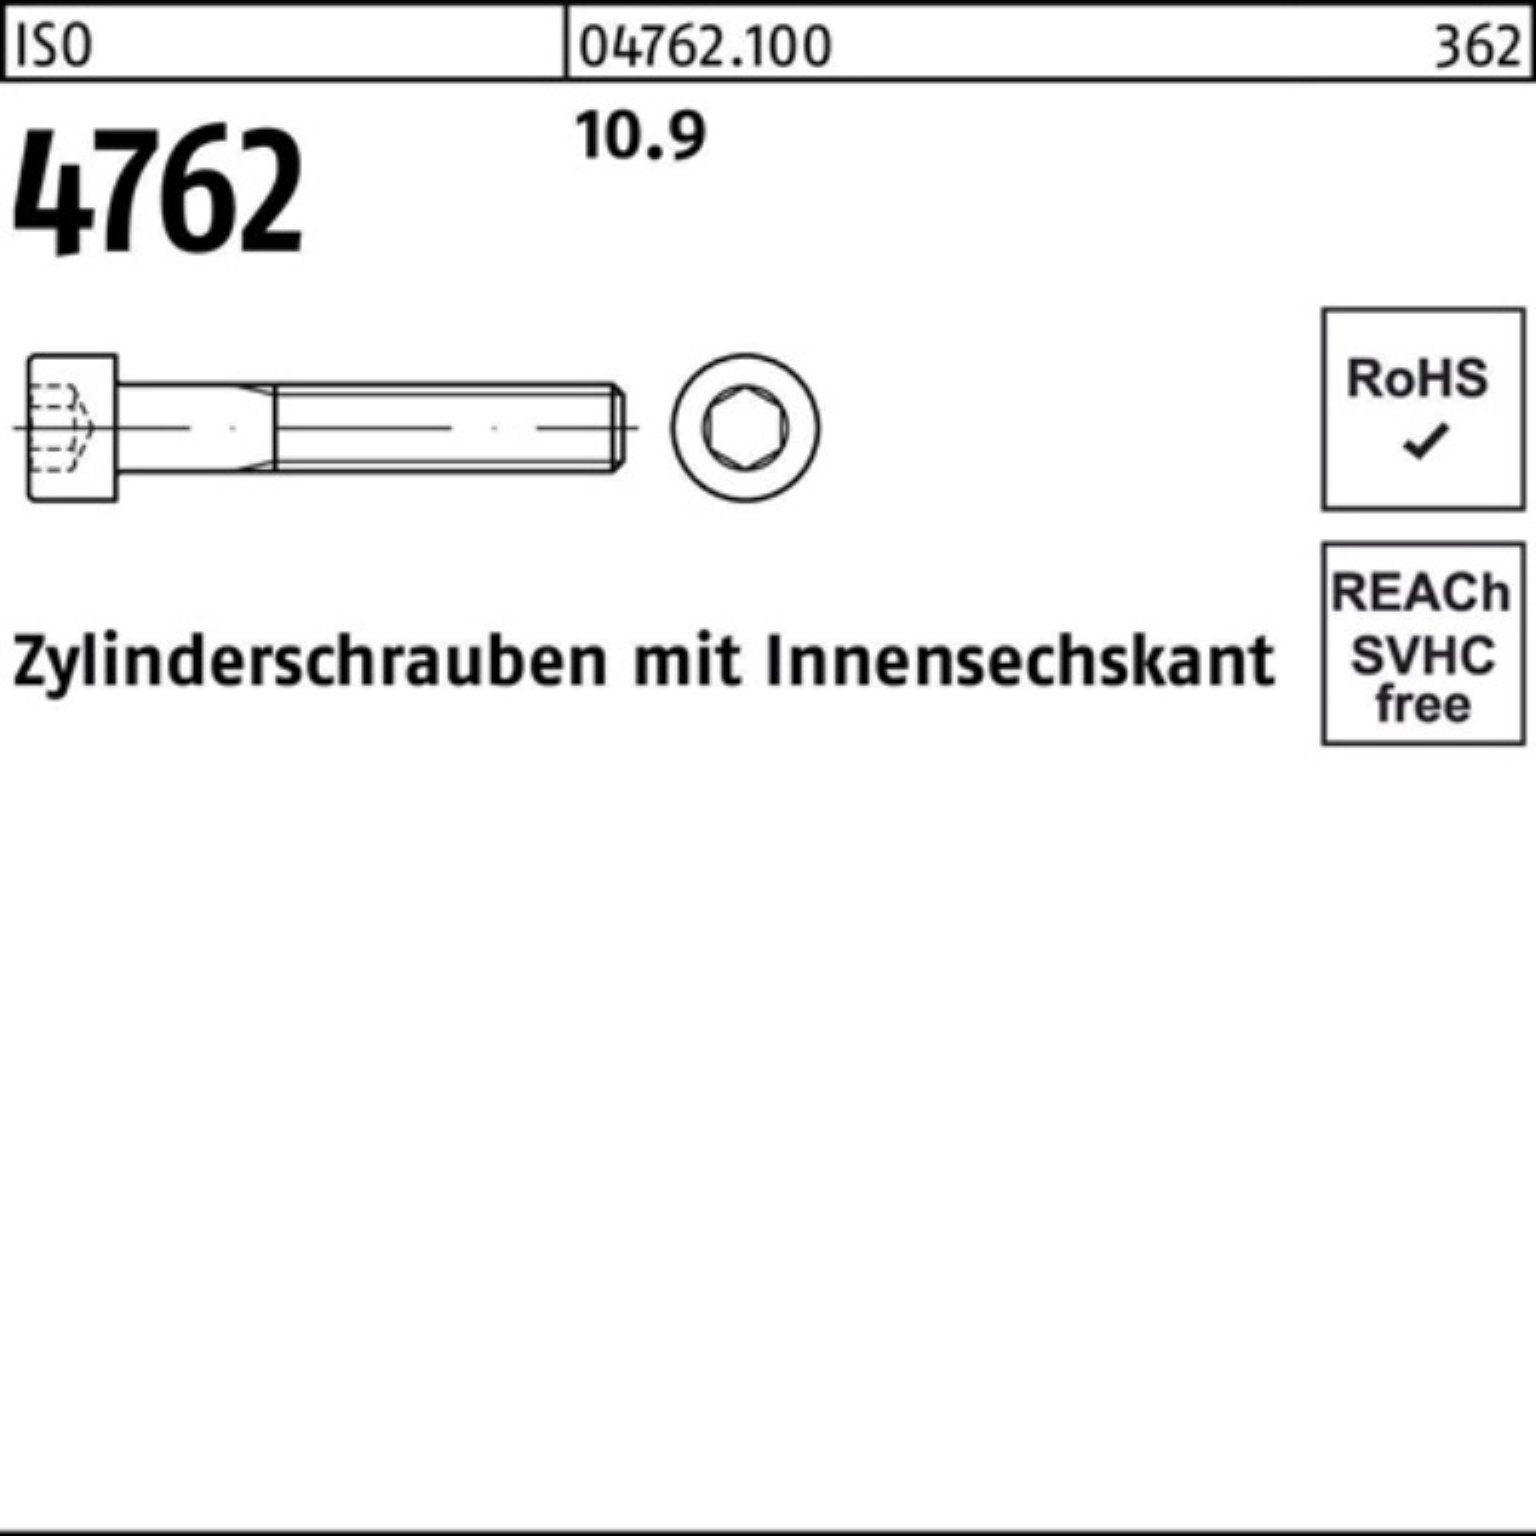 ISO Zylinderschraube 10.9 100er Zylinderschraube 1 Reyher 340 4762 Pack Innen-6kt M36x Stück